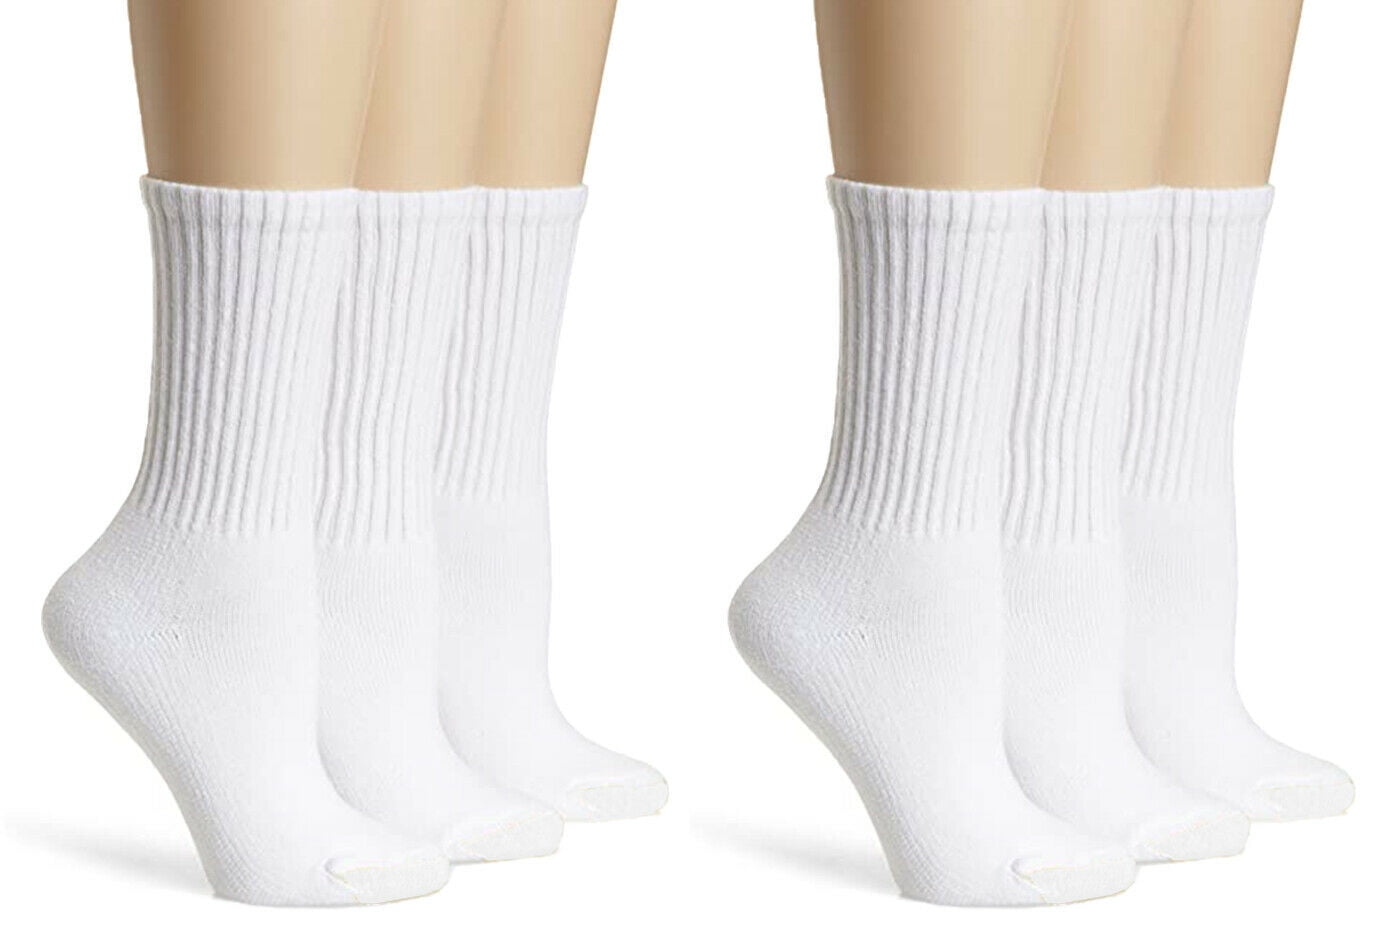 Dress Socks Striped Cotton Sport Stockings Lovers Sock Women Men Unisex School